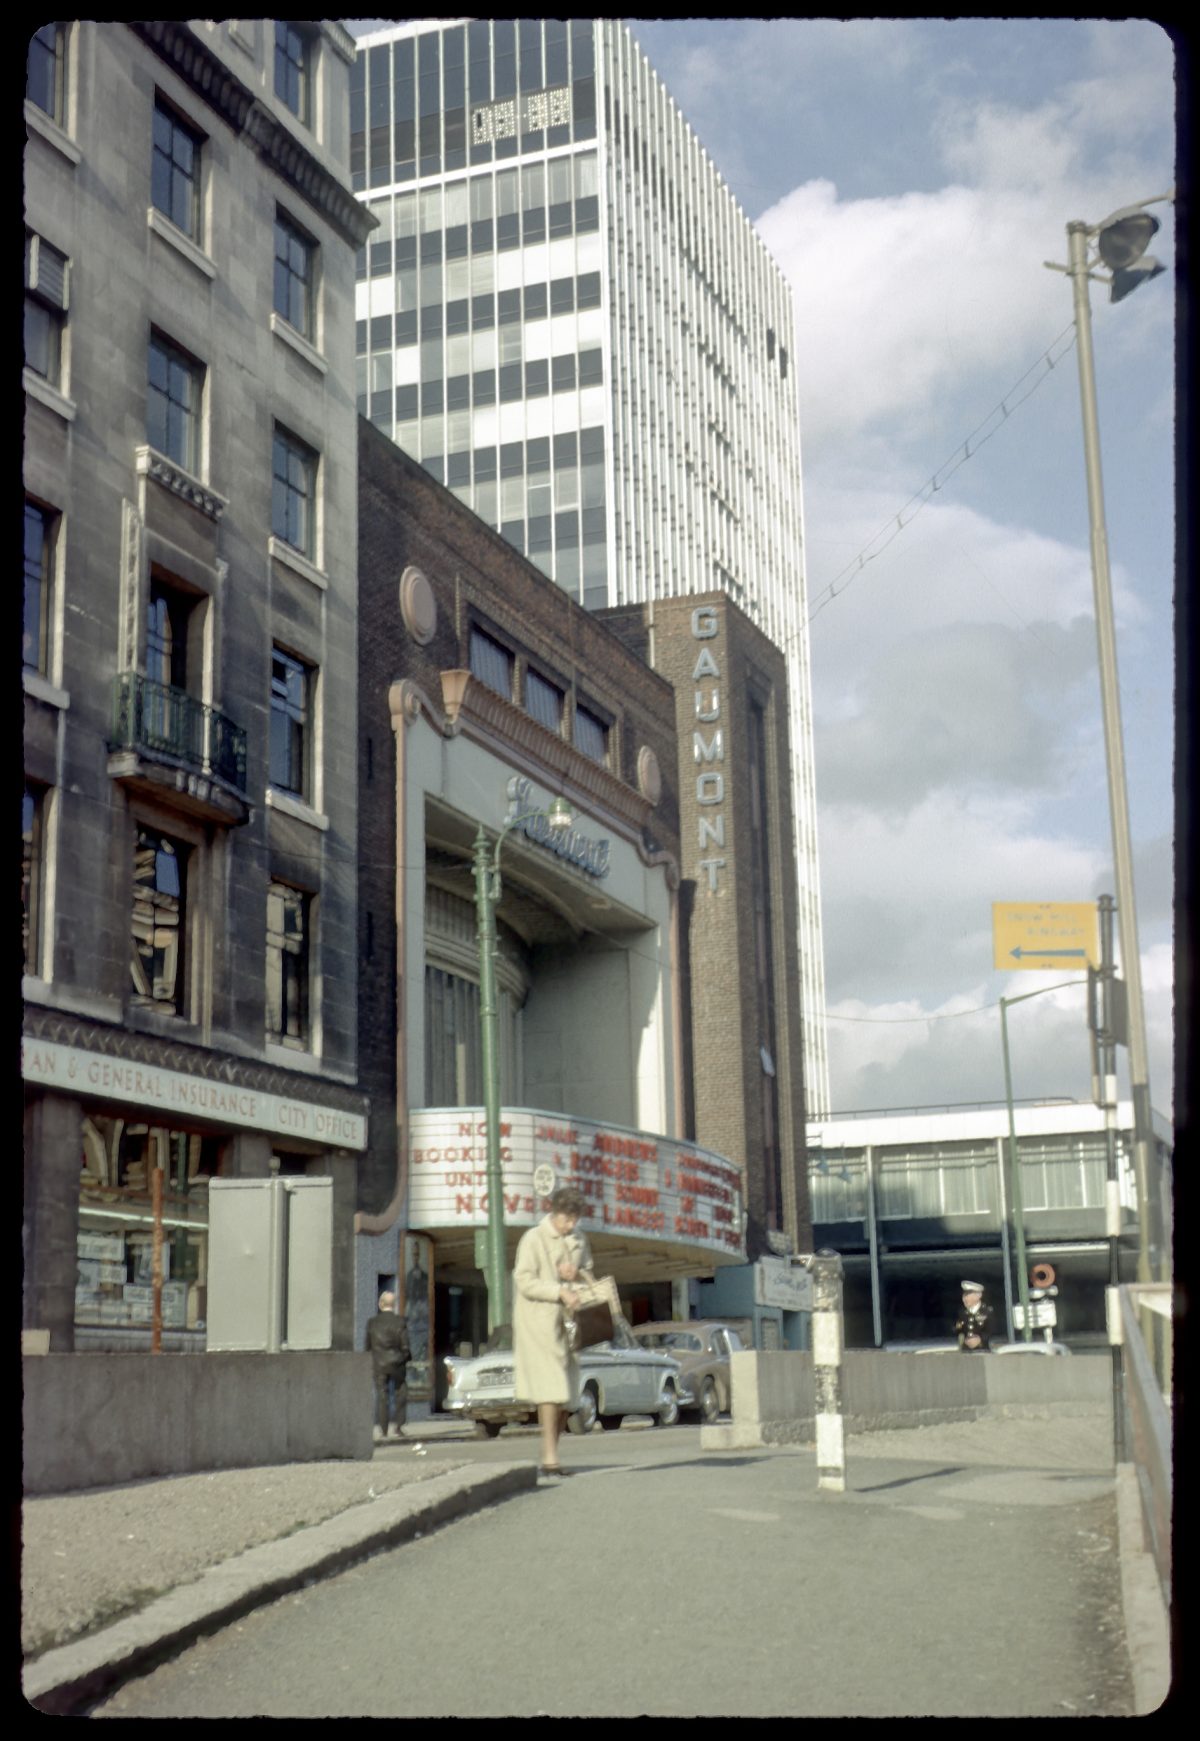 Gaumont cinema in Colmore Circus, Birmingham. 1965